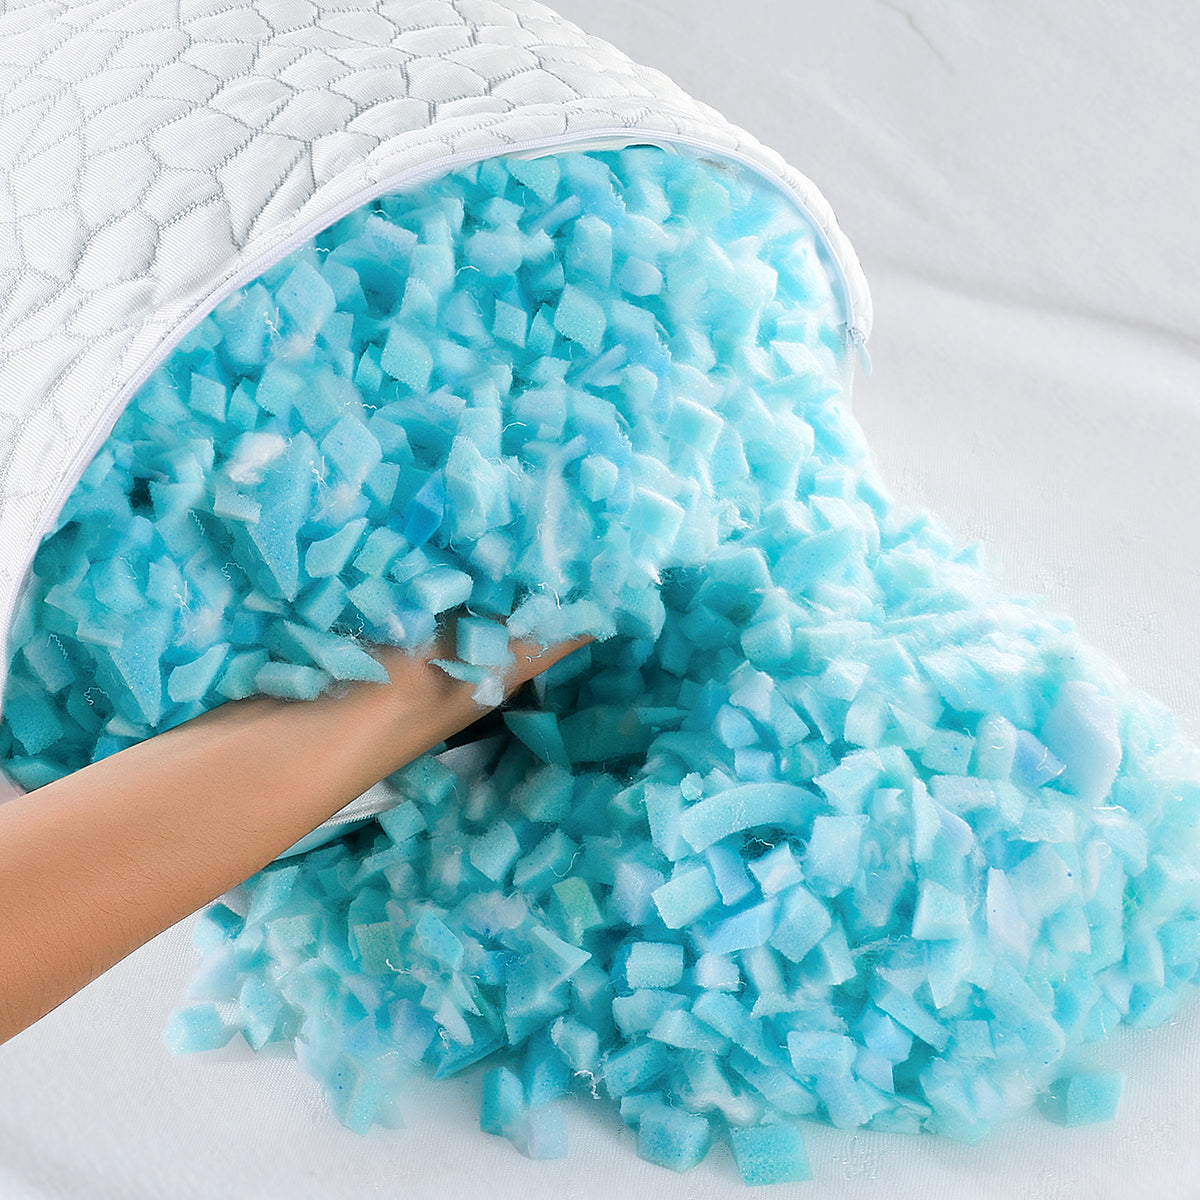 Shredded Memory Foam Pillow I Gel Memory Foam Pillow I Adjustable Shredded  Gel Memory Foam Pillow I Lucid